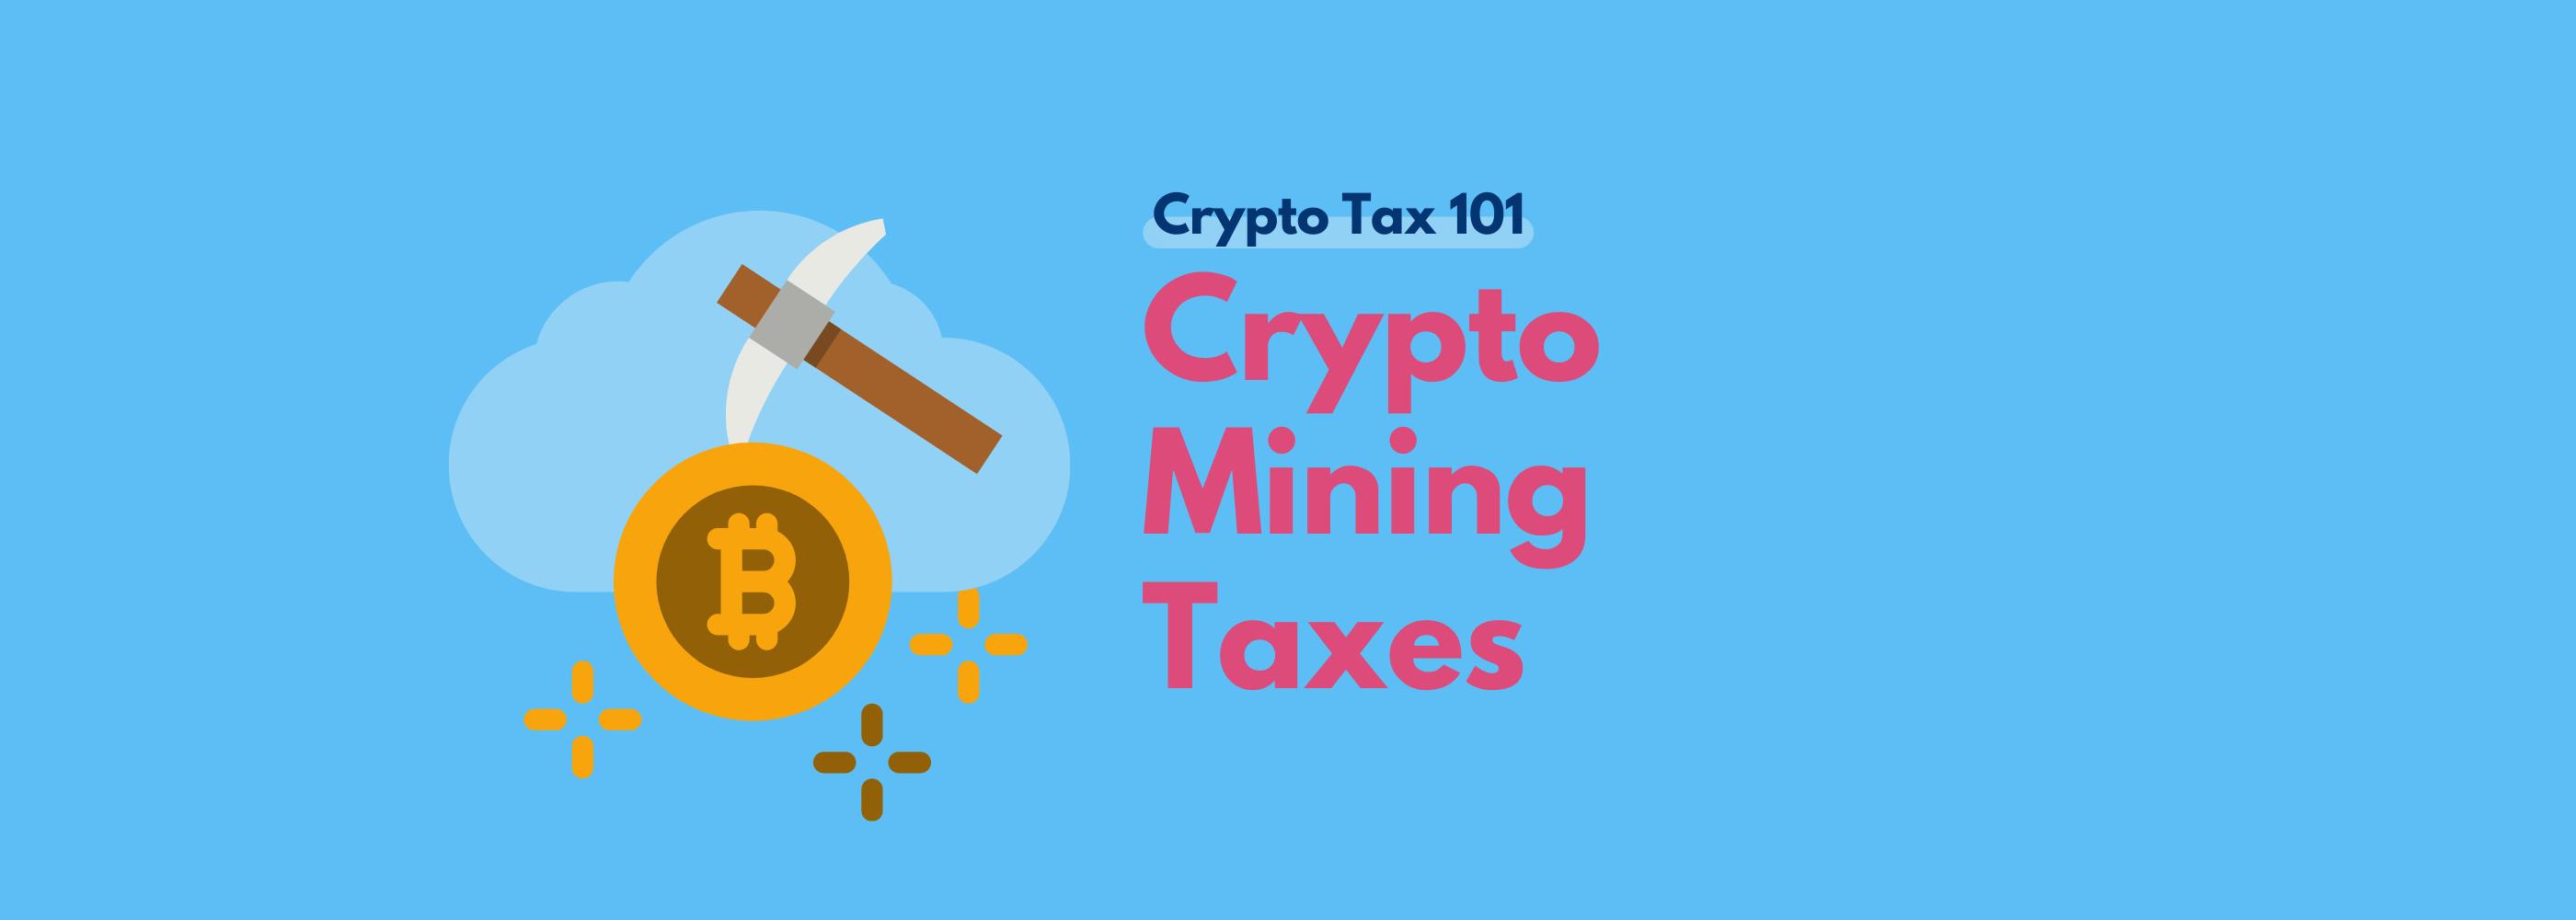 mining tax crypto